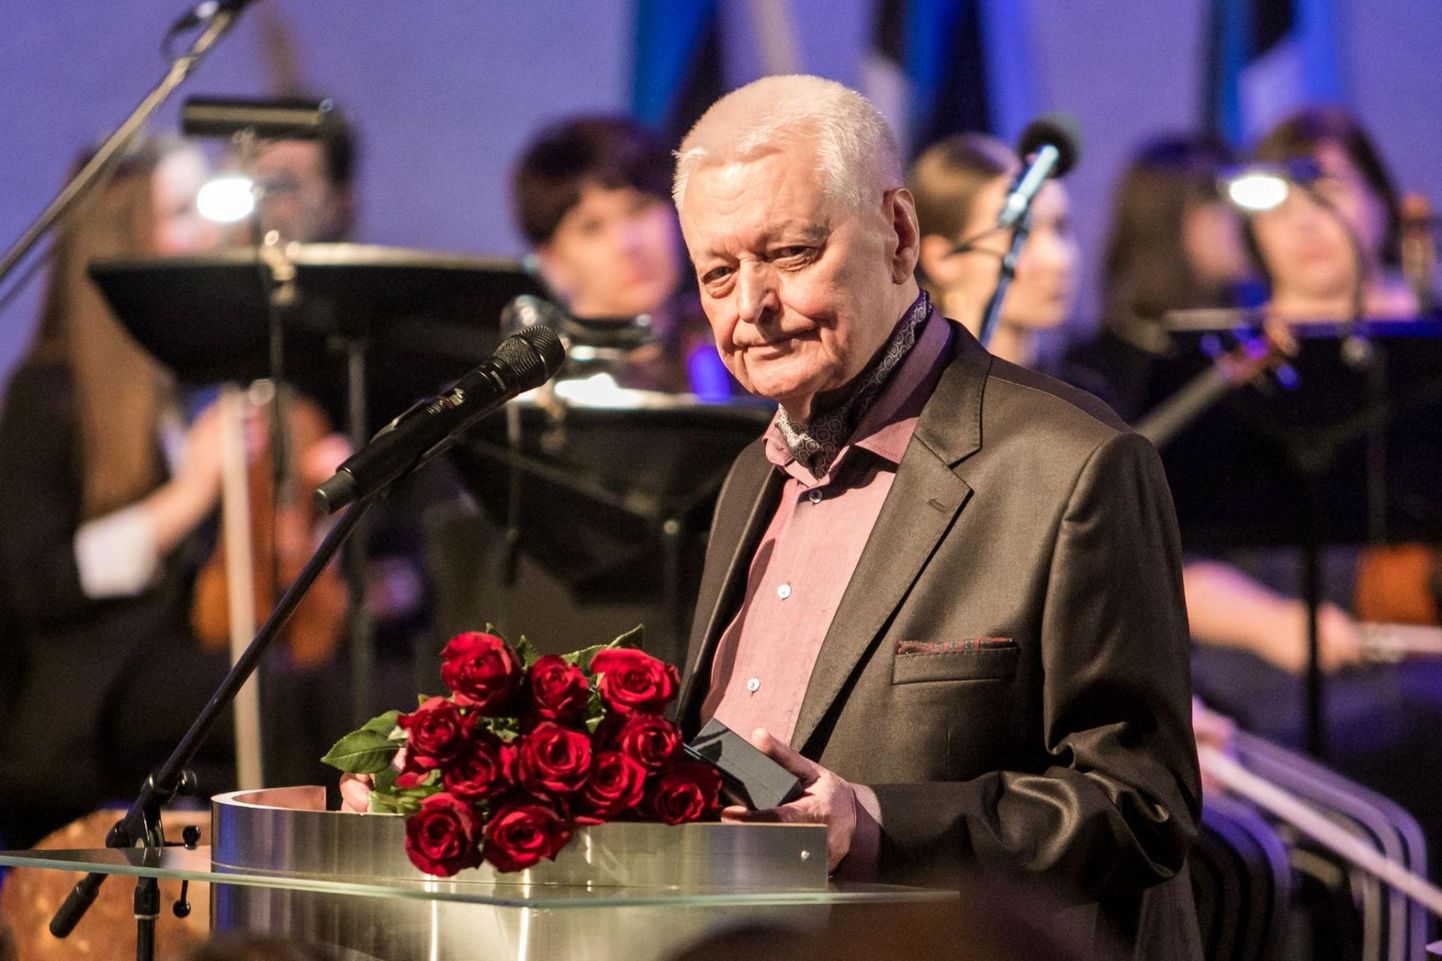 Viimati andis Pärnu linn aukodaniku tiitli välja aastal 2017 pianistile ja muusikapedagoogile Arbo Valdmale.